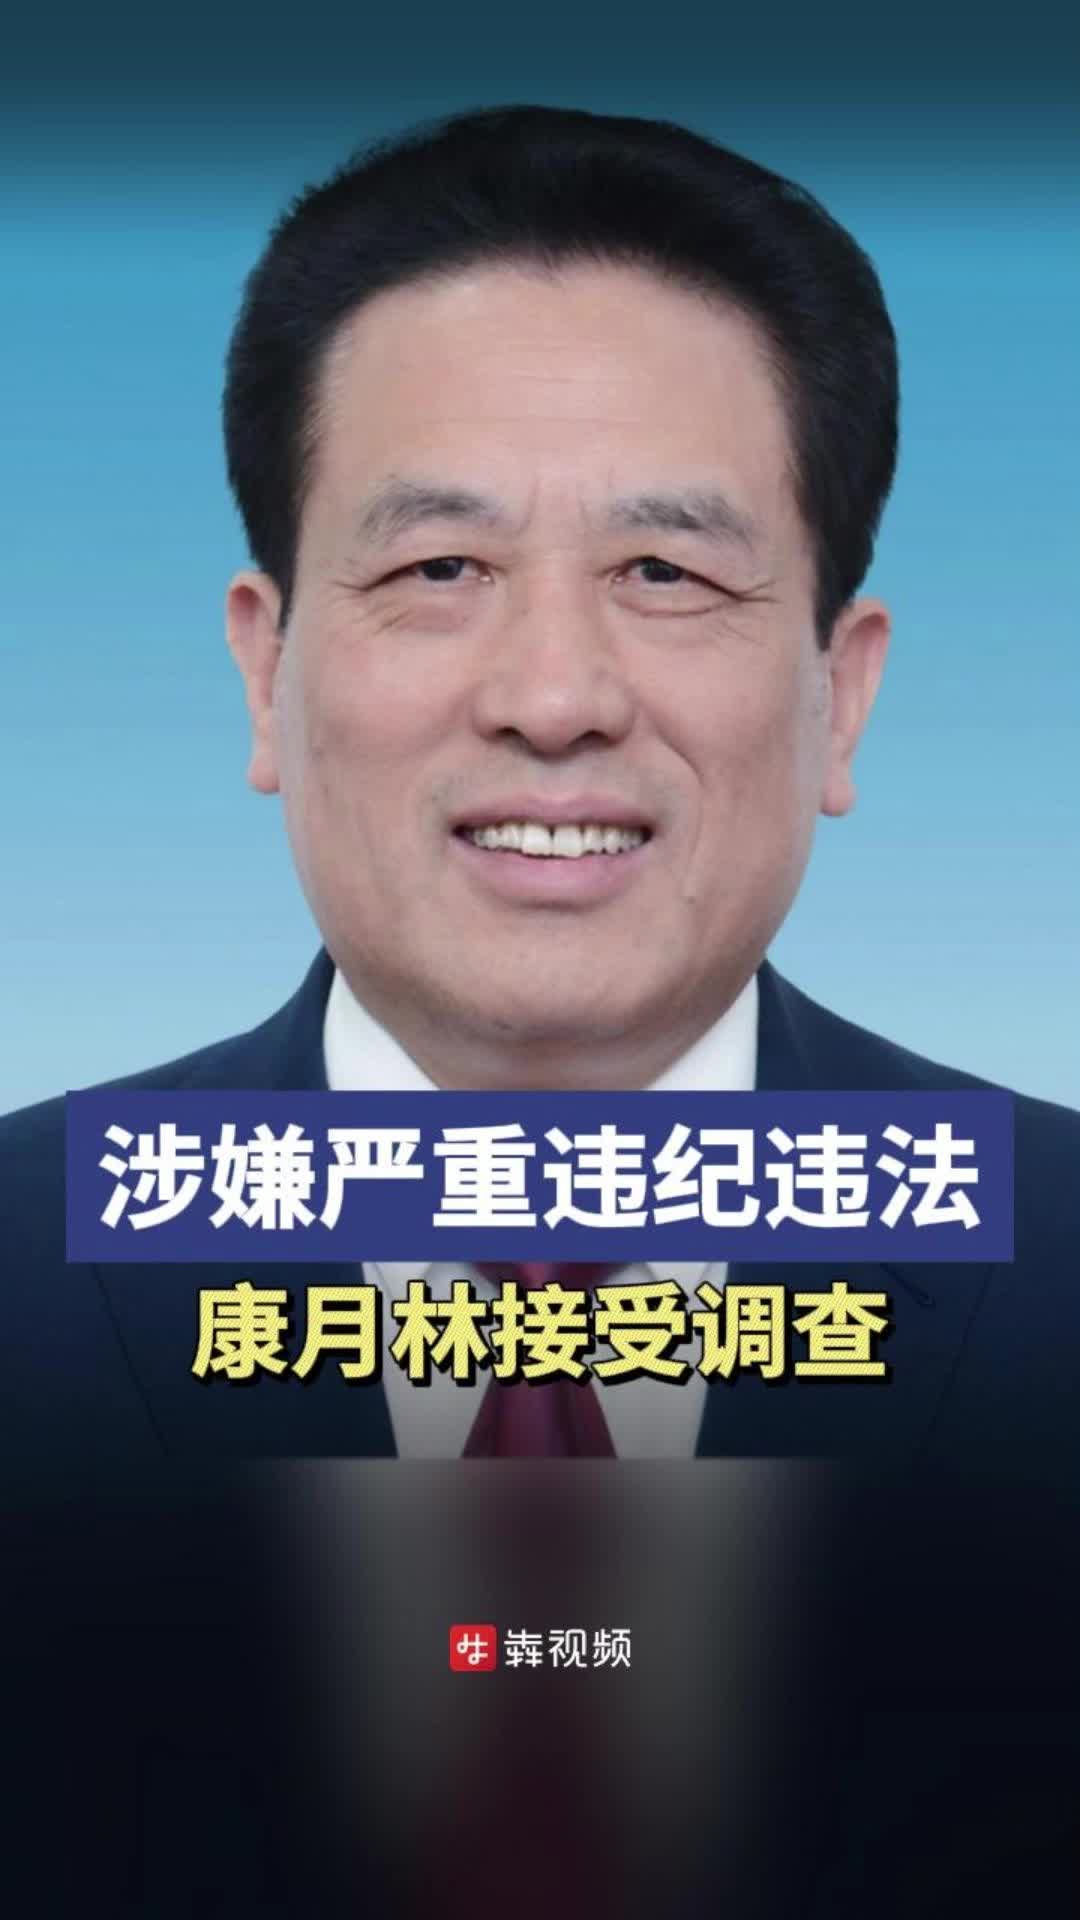 湖南铁路科技职业技术学院党委书记康月林被查